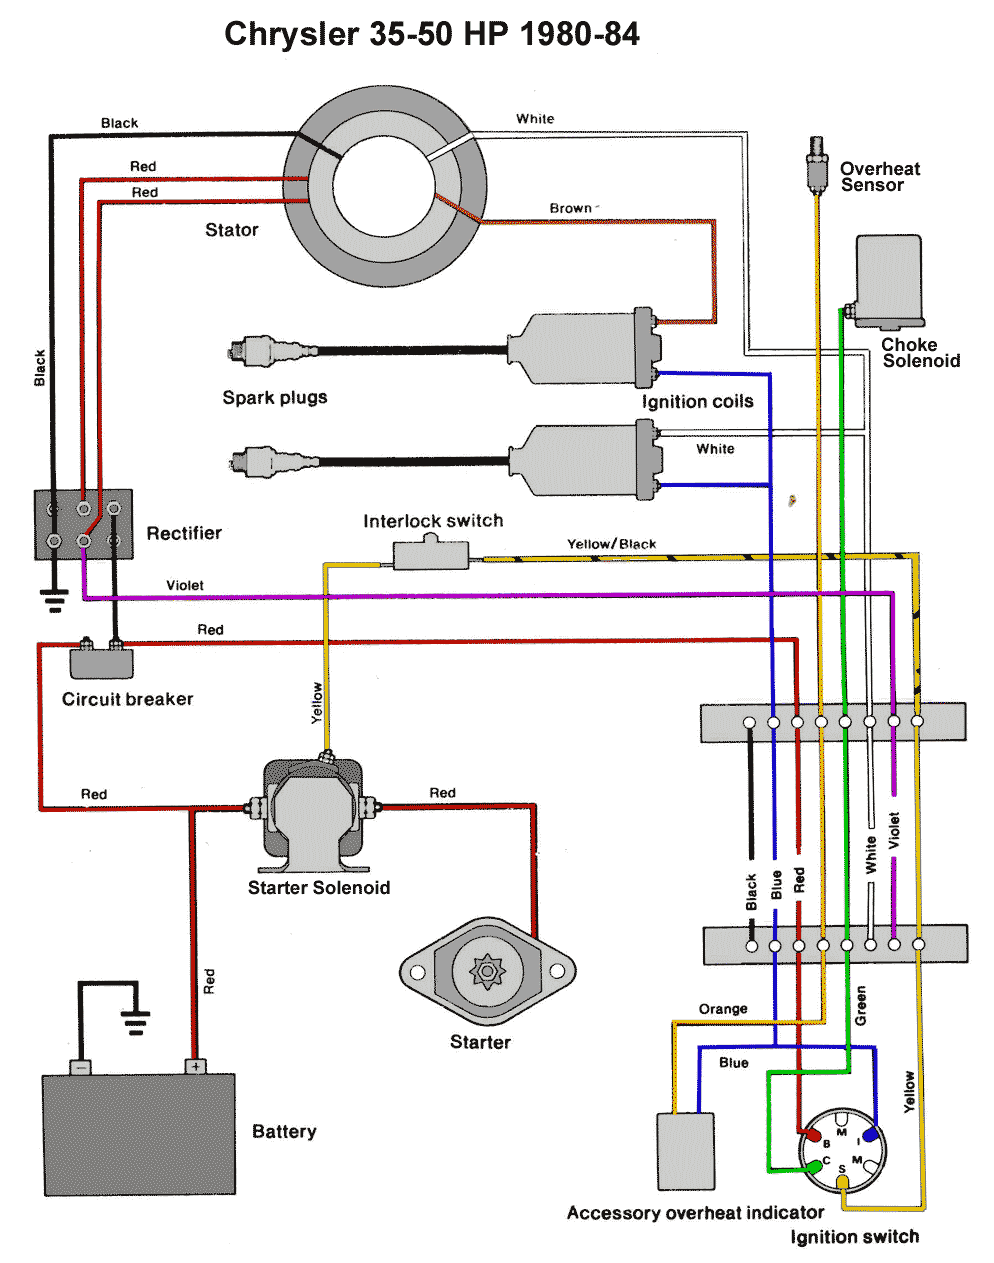 Diagrama Chysler 35_50 hp 1980 a 1984